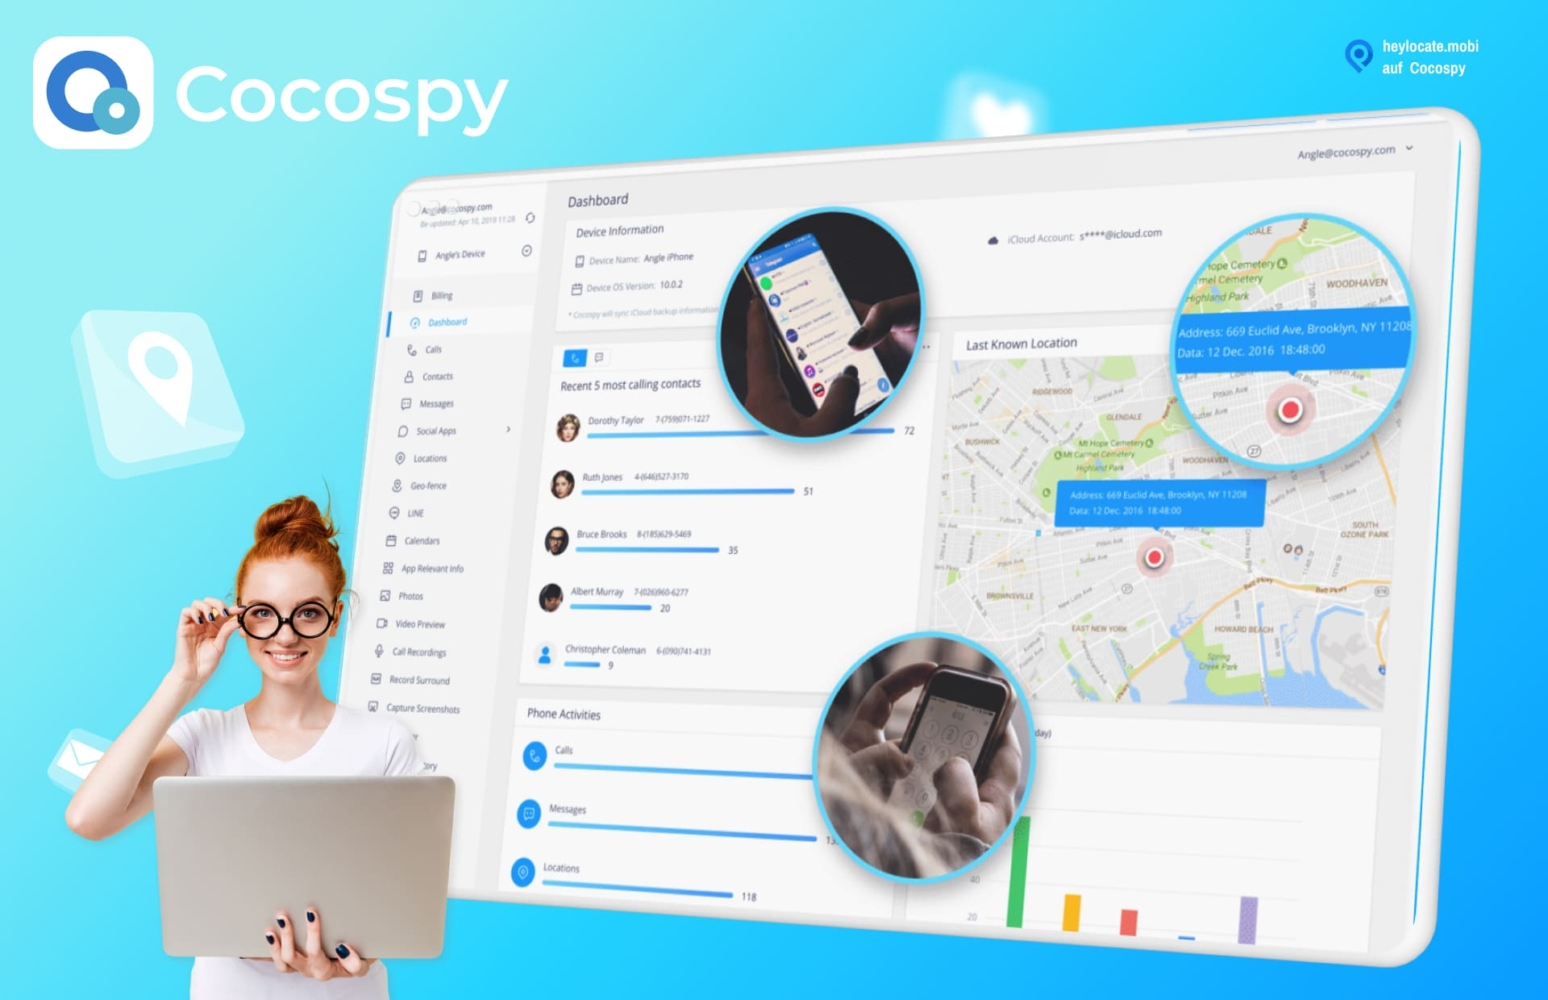 Ein Bild von Cocospy, das eine Person zeigt, die einen Laptop hält, auf dem das Cocospy-Dashboard angezeigt wird. Auf dem Bildschirm sind verschiedene Funktionen wie die Standortverfolgung und Anrufaufzeichnungen zu sehen. Die eingekreisten Bilder zeigen eine Nahaufnahme der App, die auf einem Smartphone verwendet wird.